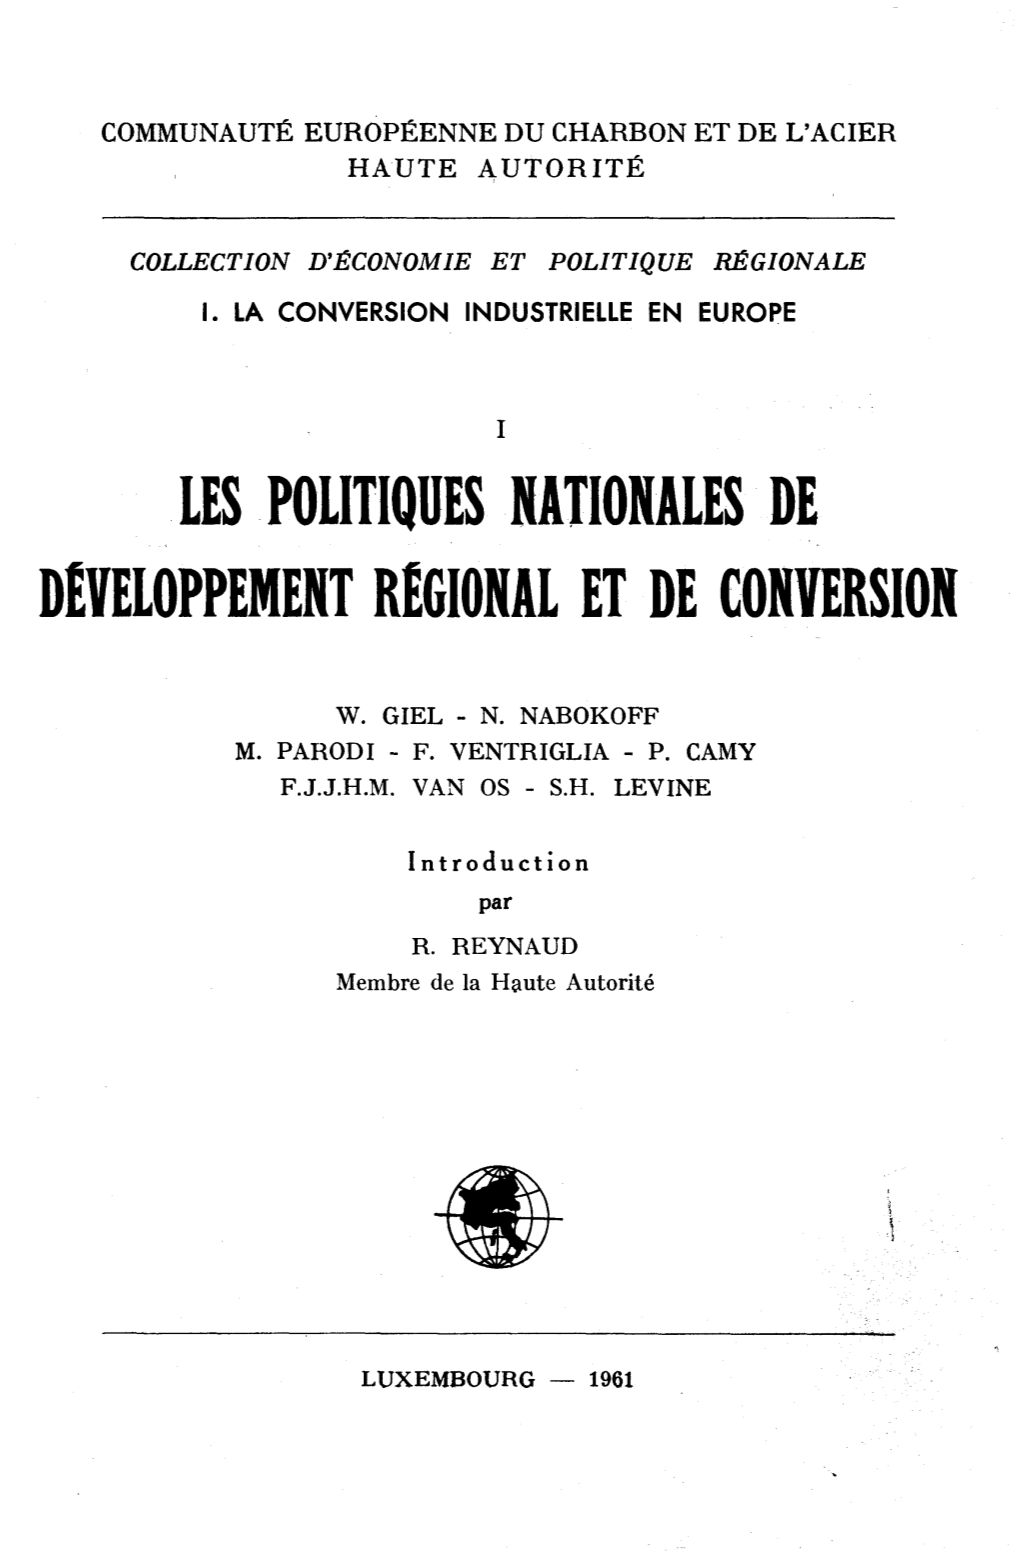 Les Politiques Nationales De Developpement Regional Et De Conversion